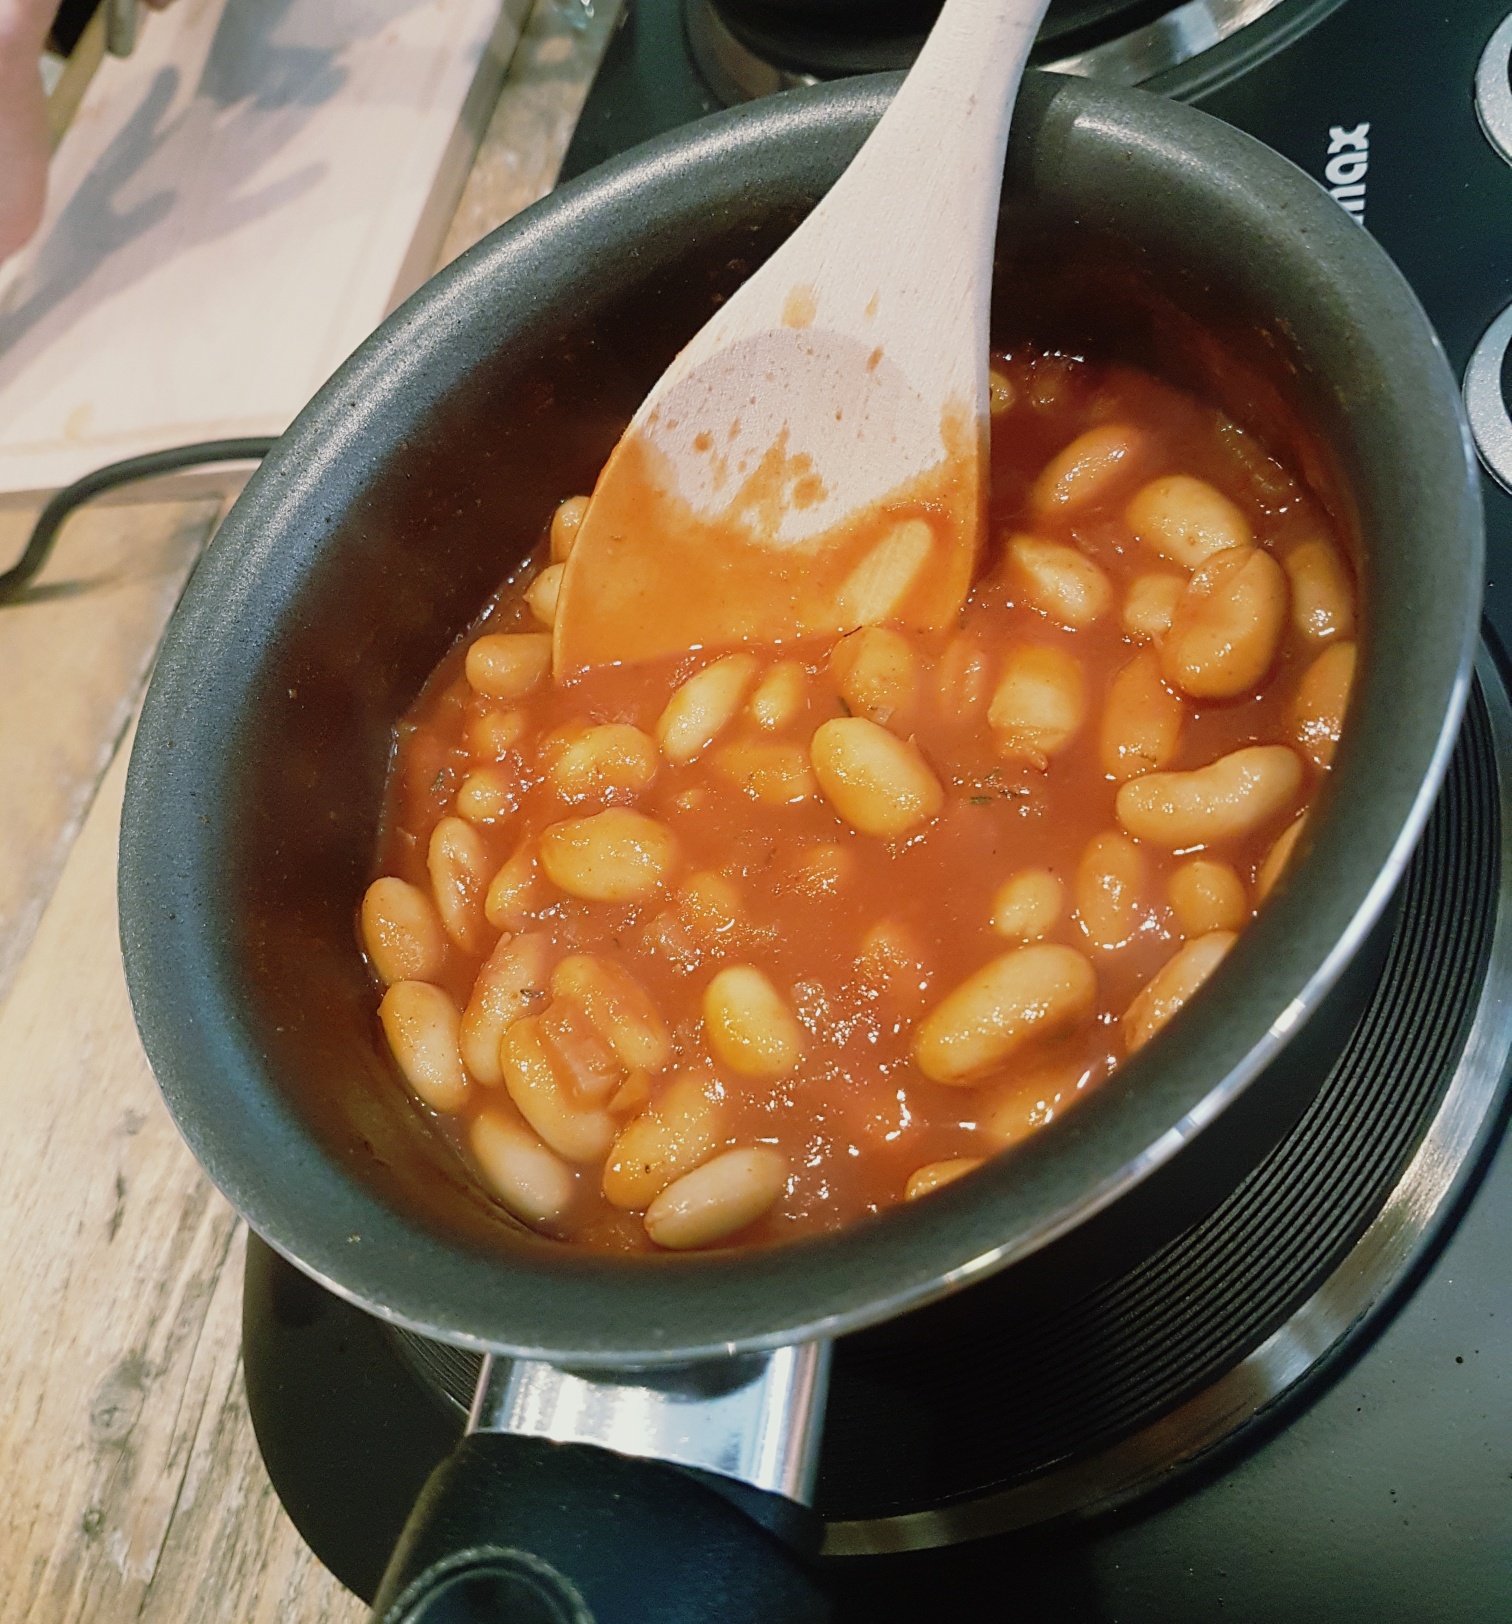 Homemade baked beans